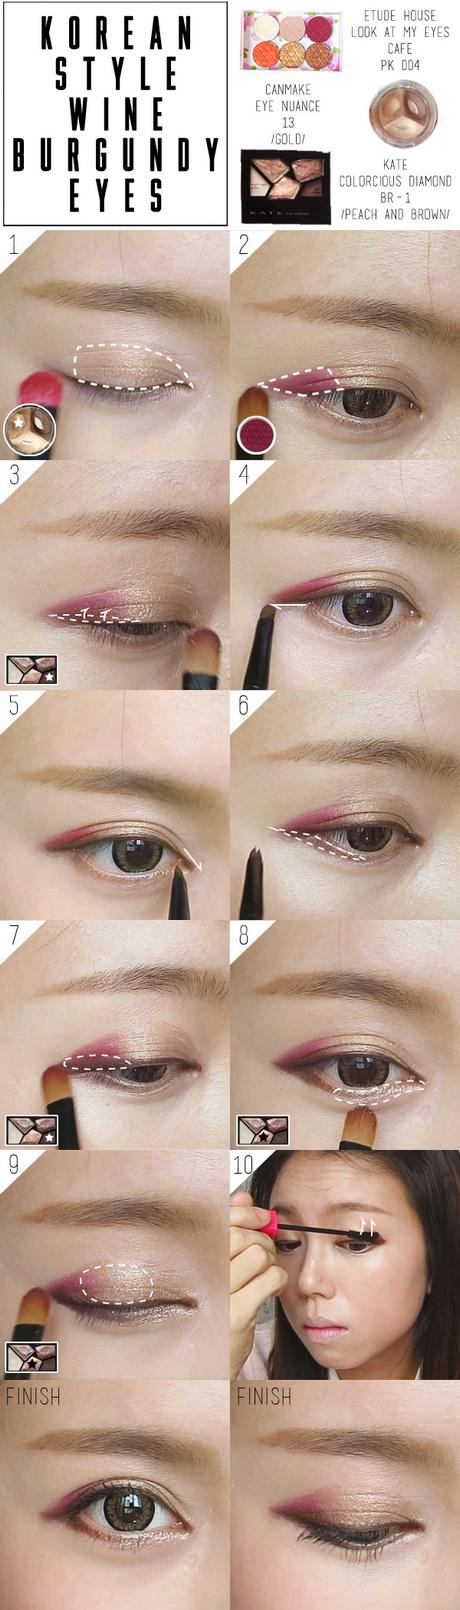 Korean natural look make-up tutorial